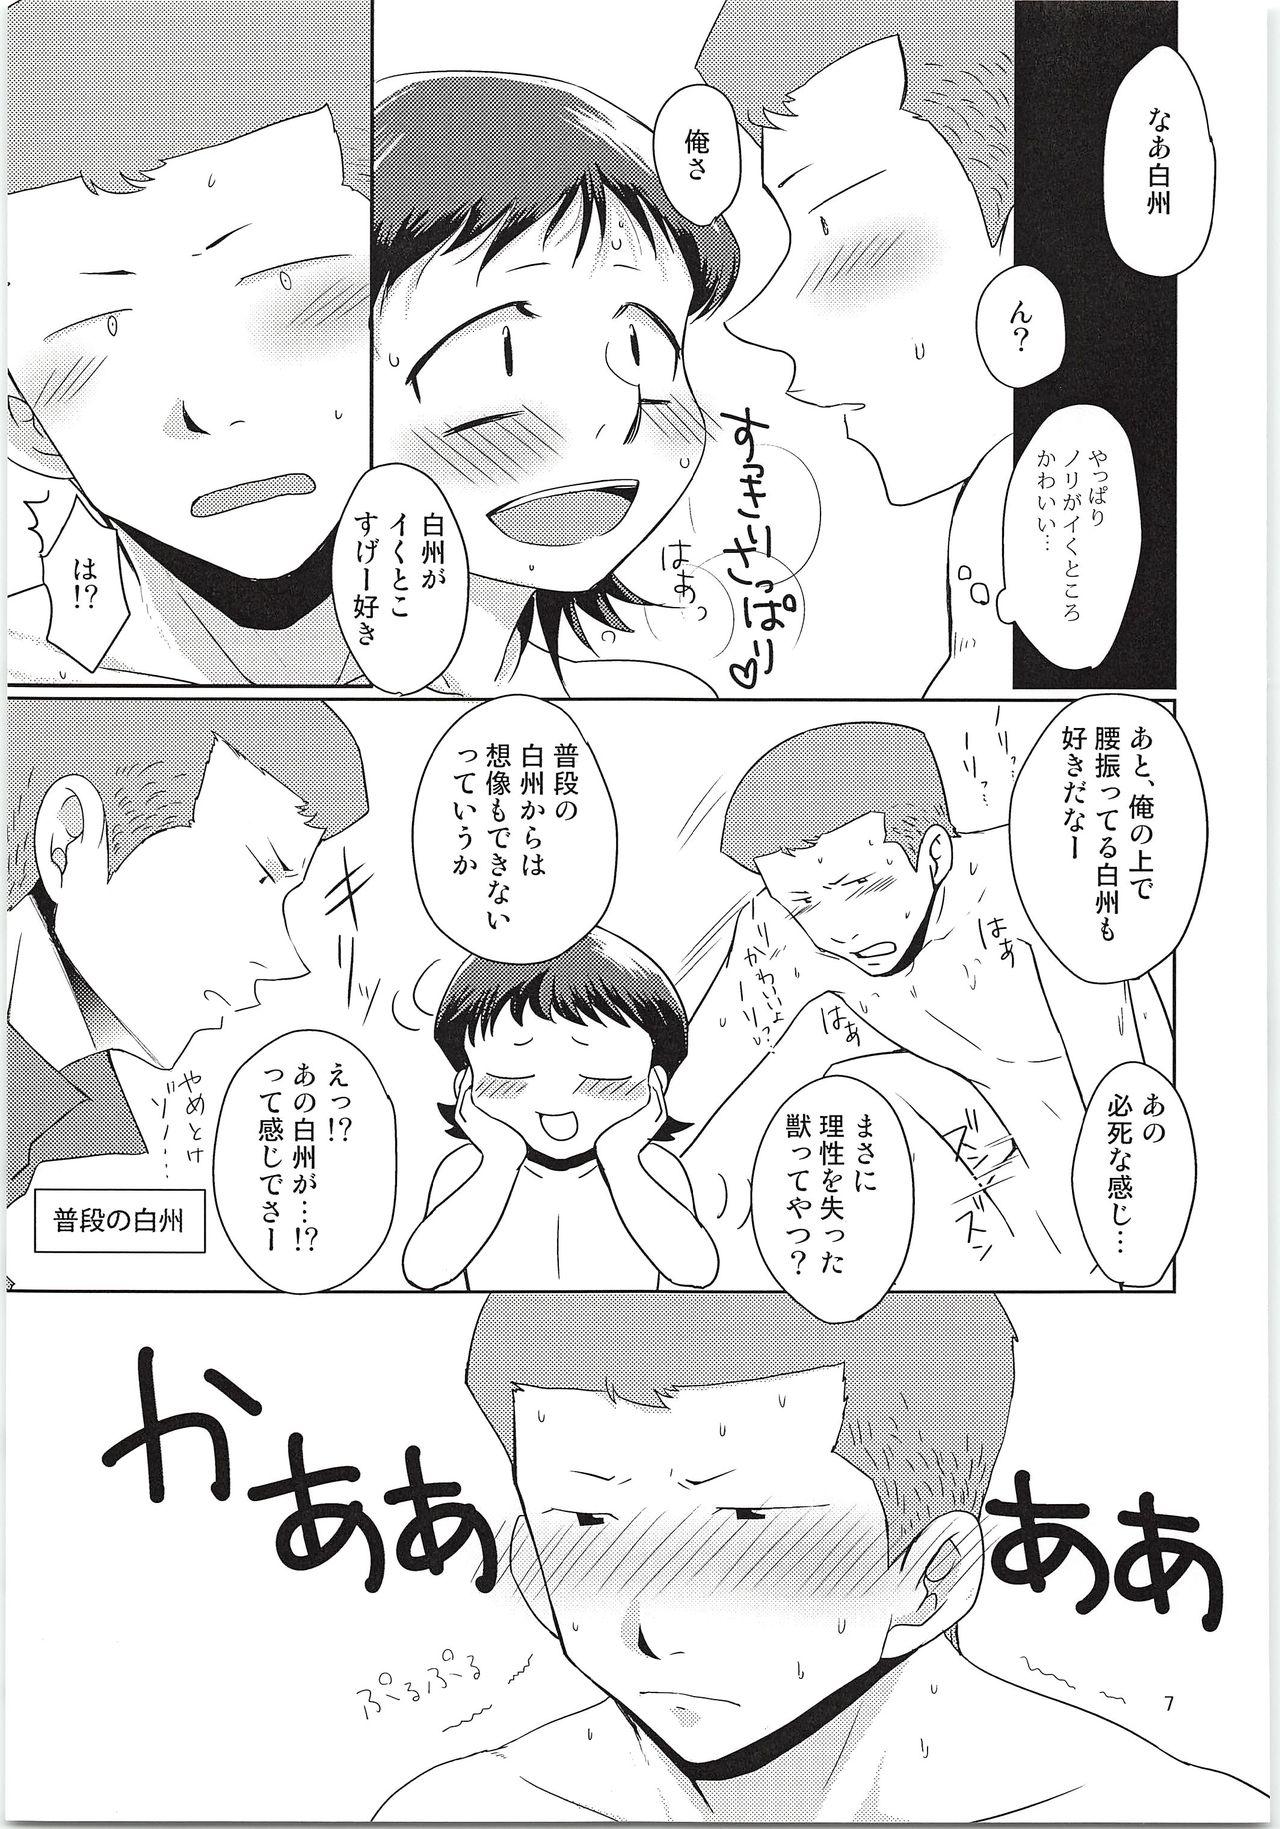 Blowjob Ecchi na ShiraKawa Kudasai!! - Daiya no ace Rope - Page 6